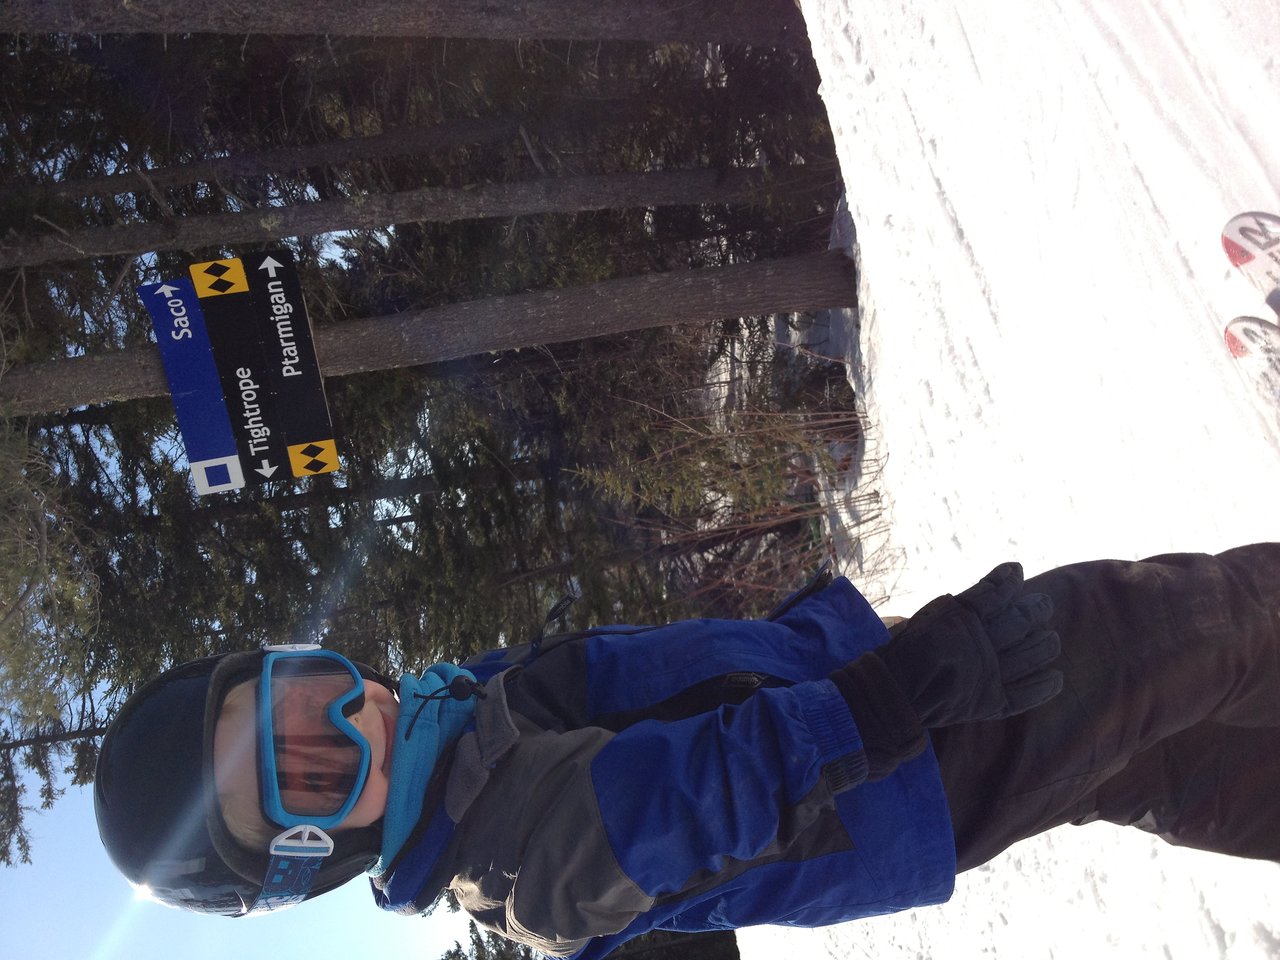 Axl first ski lift